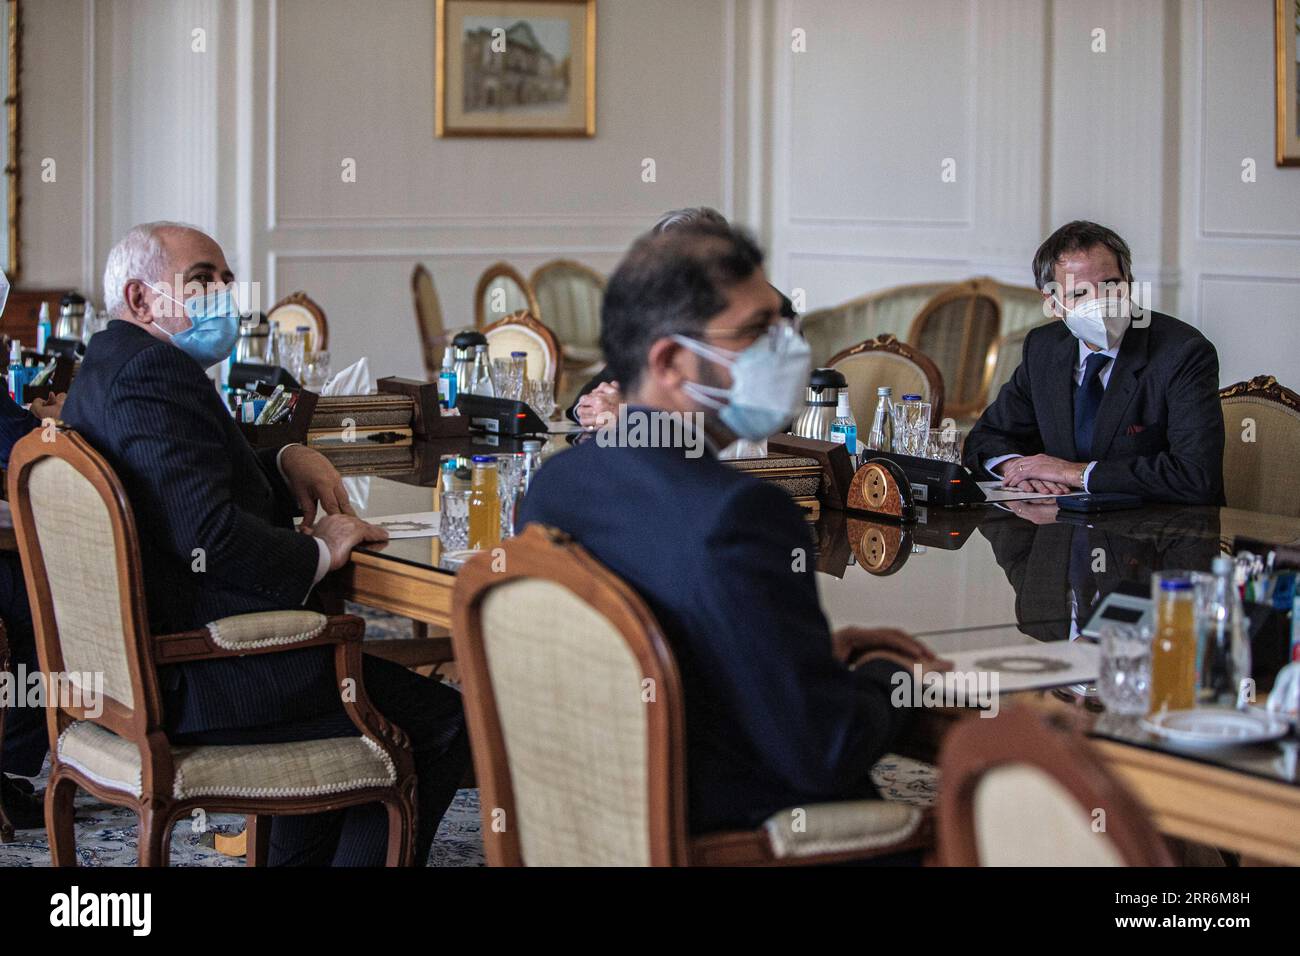 210221 -- TÉHÉRAN, le 21 février 2021 -- le ministre iranien des Affaires étrangères Mohammad Javad Zarif L rencontre le directeur général de l'Agence internationale de l'énergie atomique, Rafael Grossi R, à Téhéran, Iran, le 21 février 2021. Au cours de la réunion de dimanche entre Zarif et Grossi, ils ont échangé leurs points de vue sur la coopération Iran-AIEA conformément à l’accord de garanties. Photo de /Xinhua IRAN-TEHRAN-ZARIF-AIEA-GROSSI-MEETING AhmadxHalabisaz PUBLICATIONxNOTxINxCHN Banque D'Images